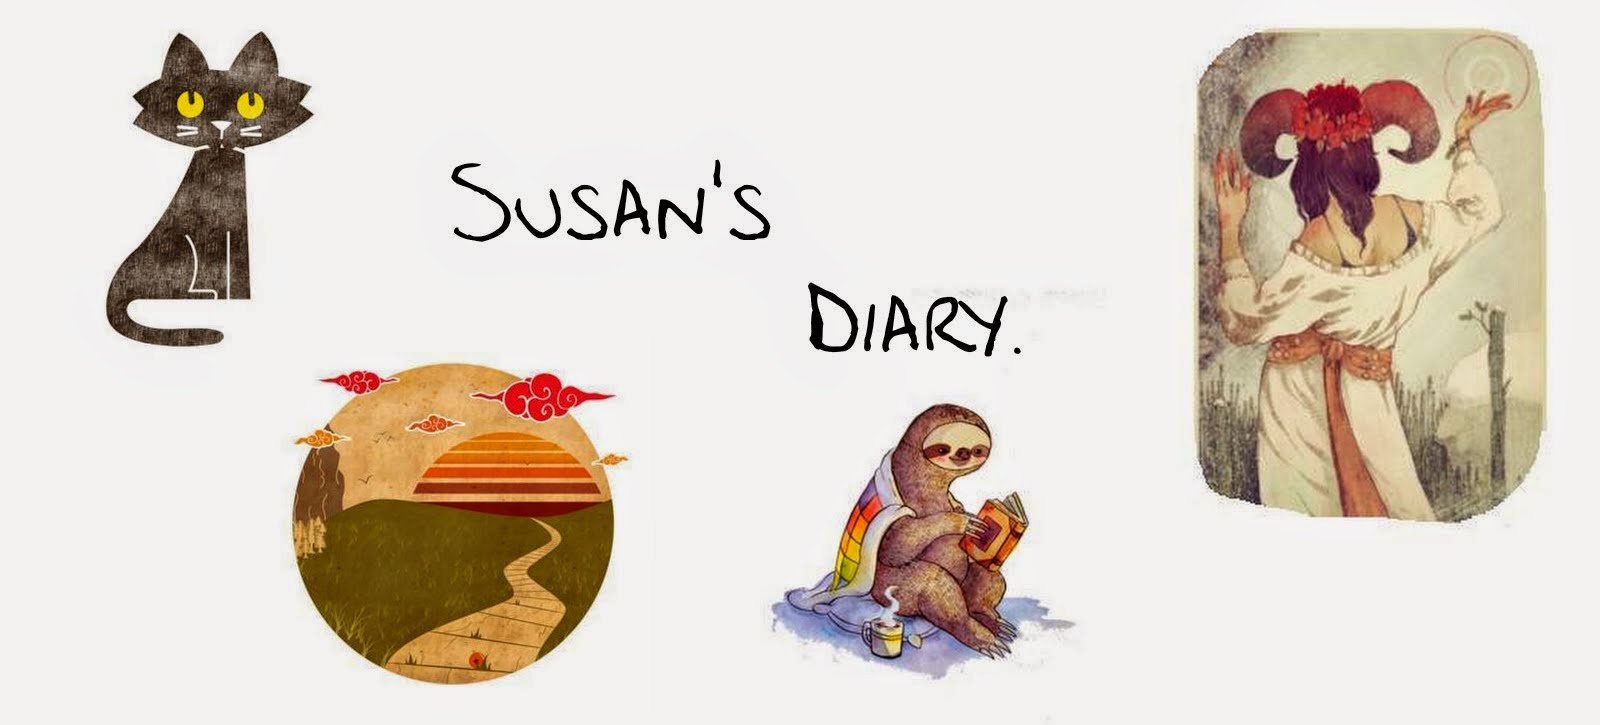 Susan's Diary.